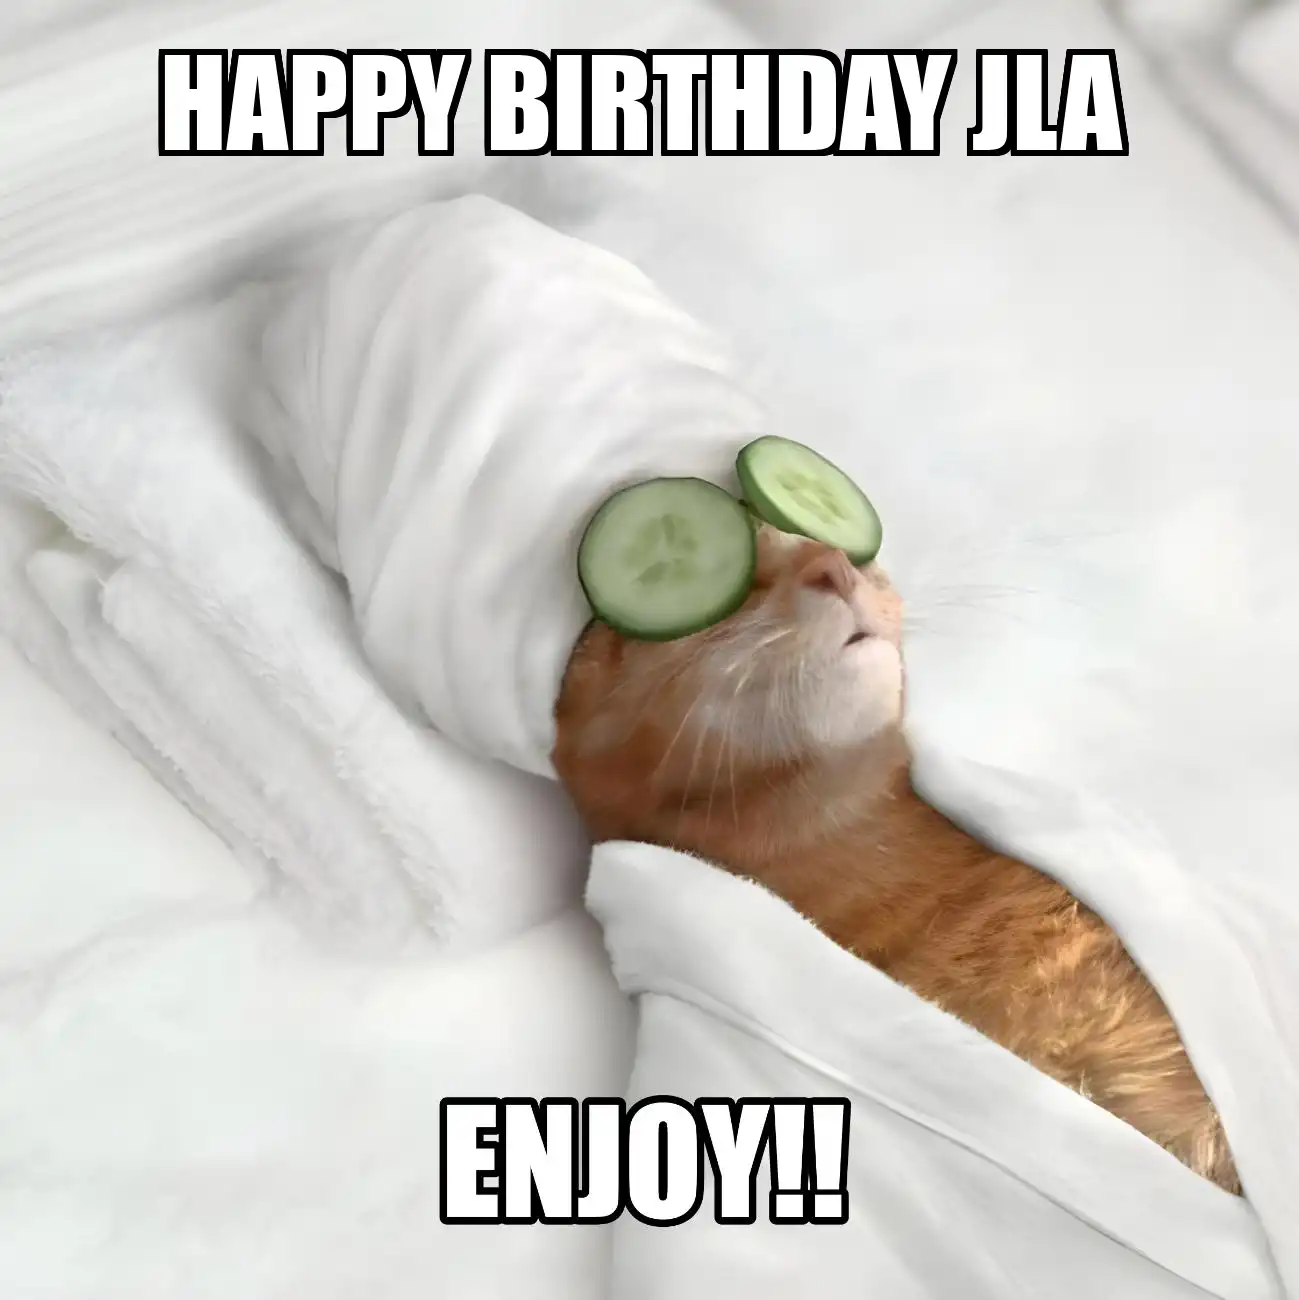 Happy Birthday Jla Enjoy Cat Meme